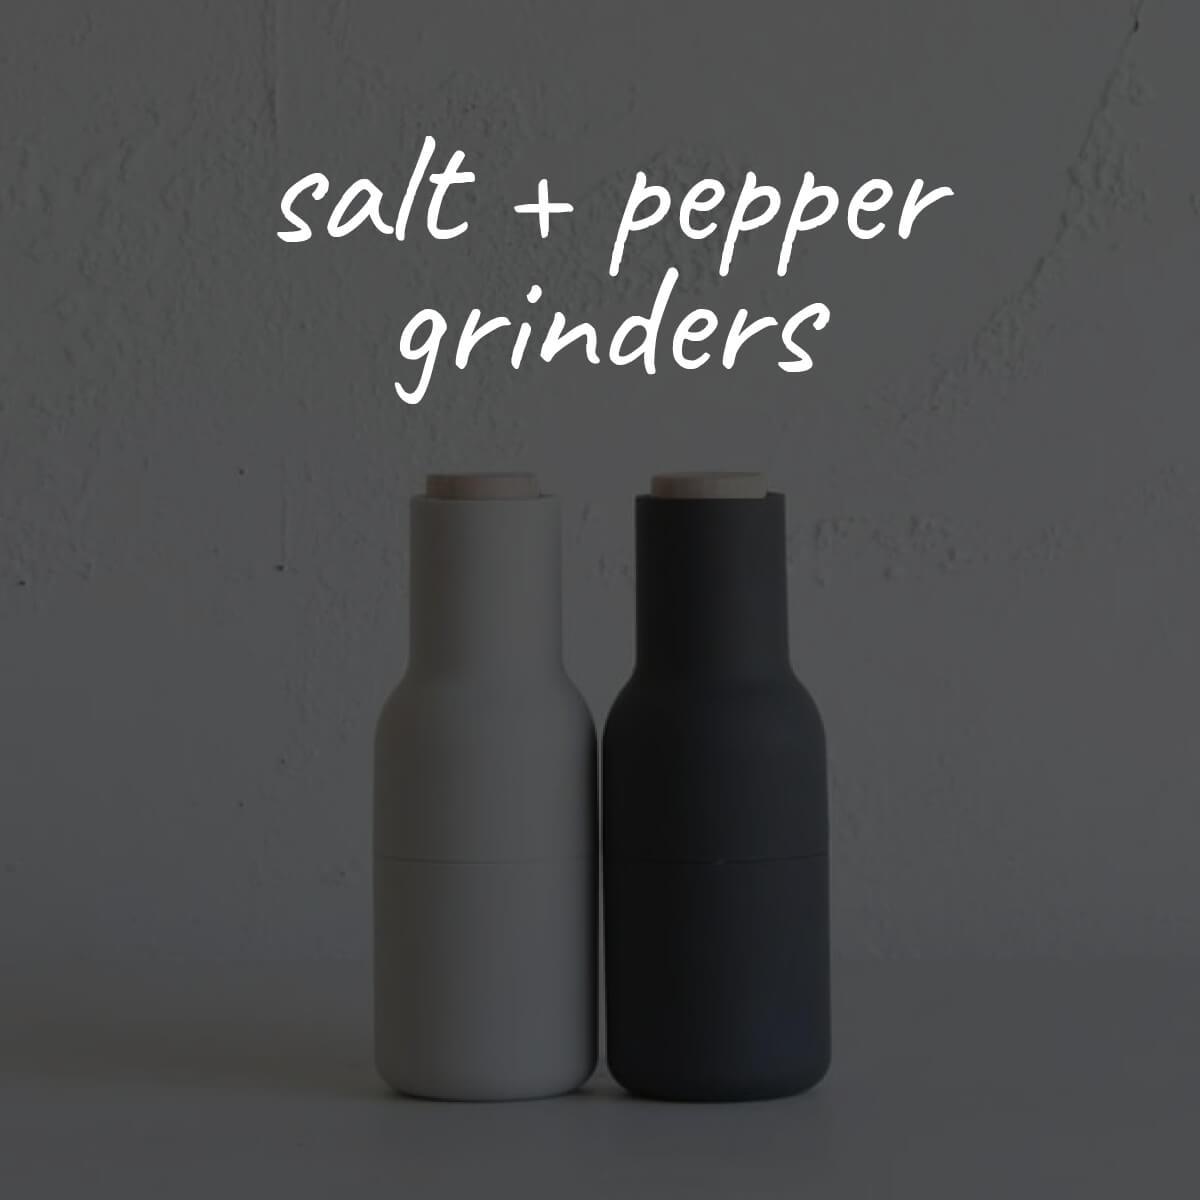 SALT + PEPPER